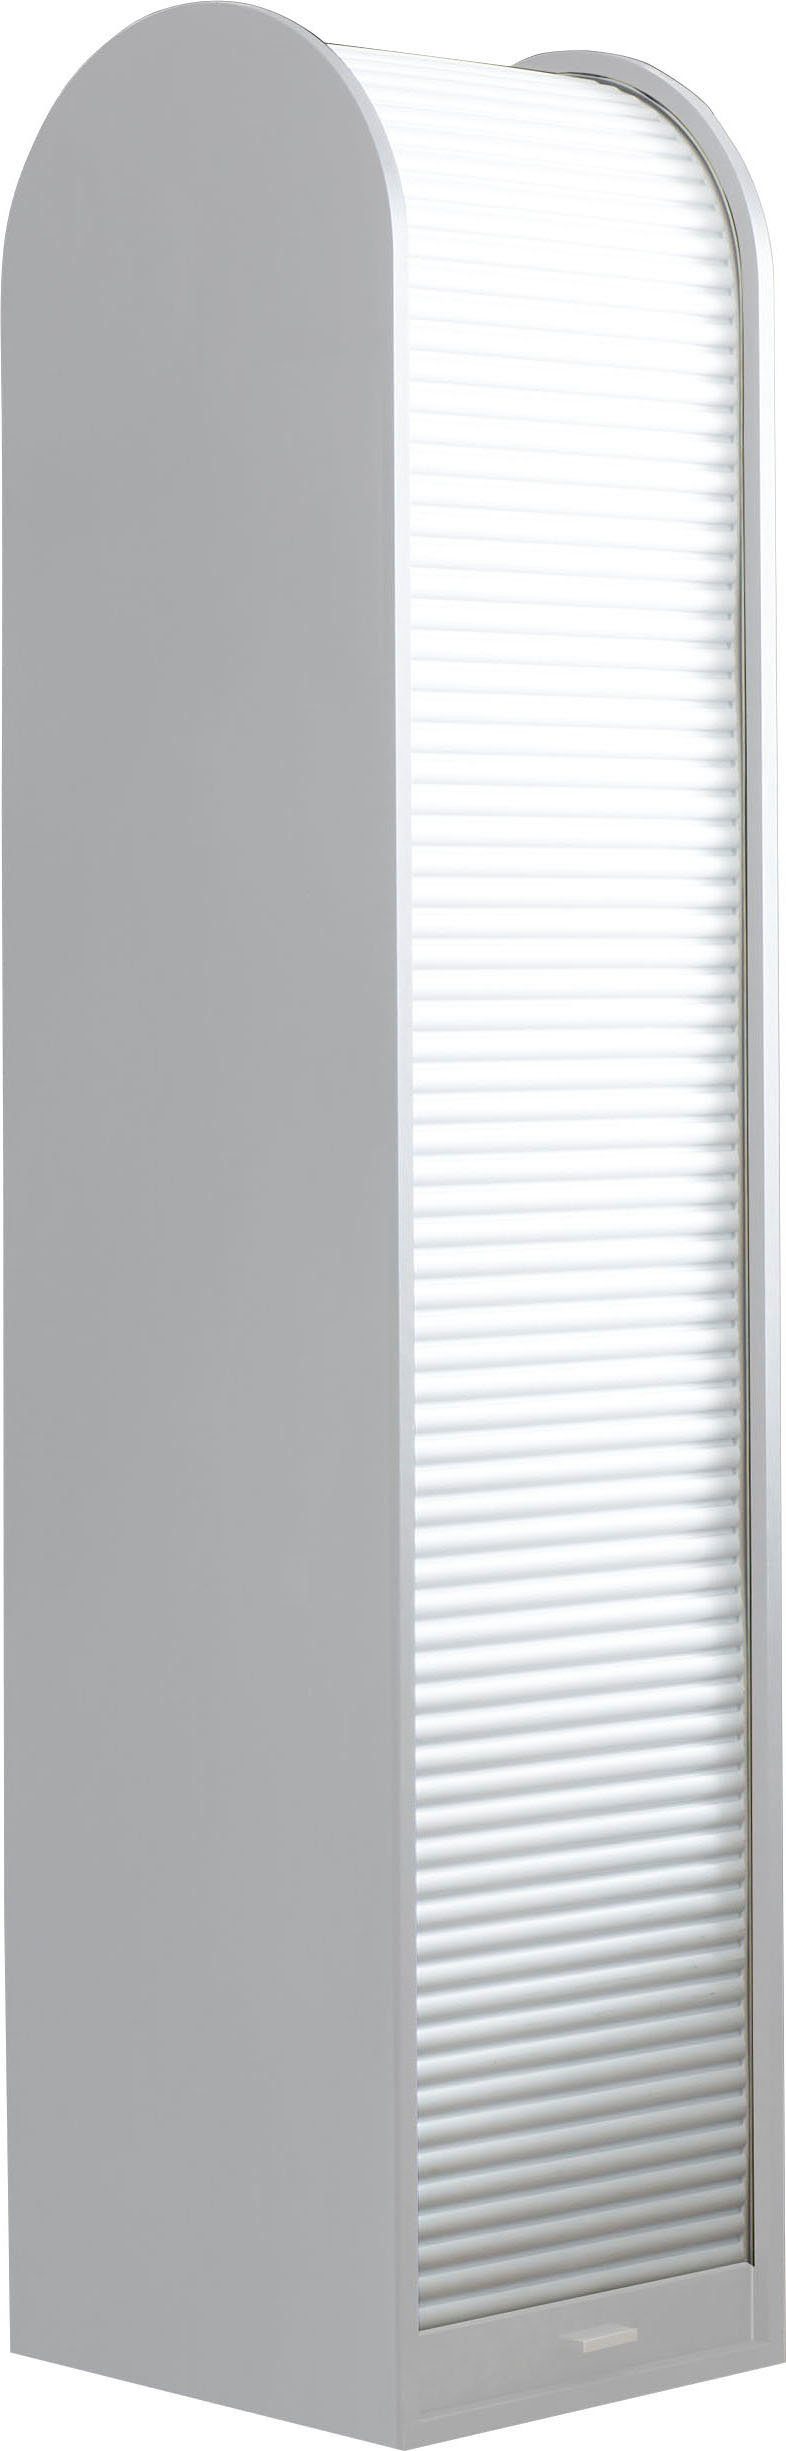 Rollladenschrank 46 cm Office matt System Big weiß Breite | Mäusbacher lack/weiß weiß